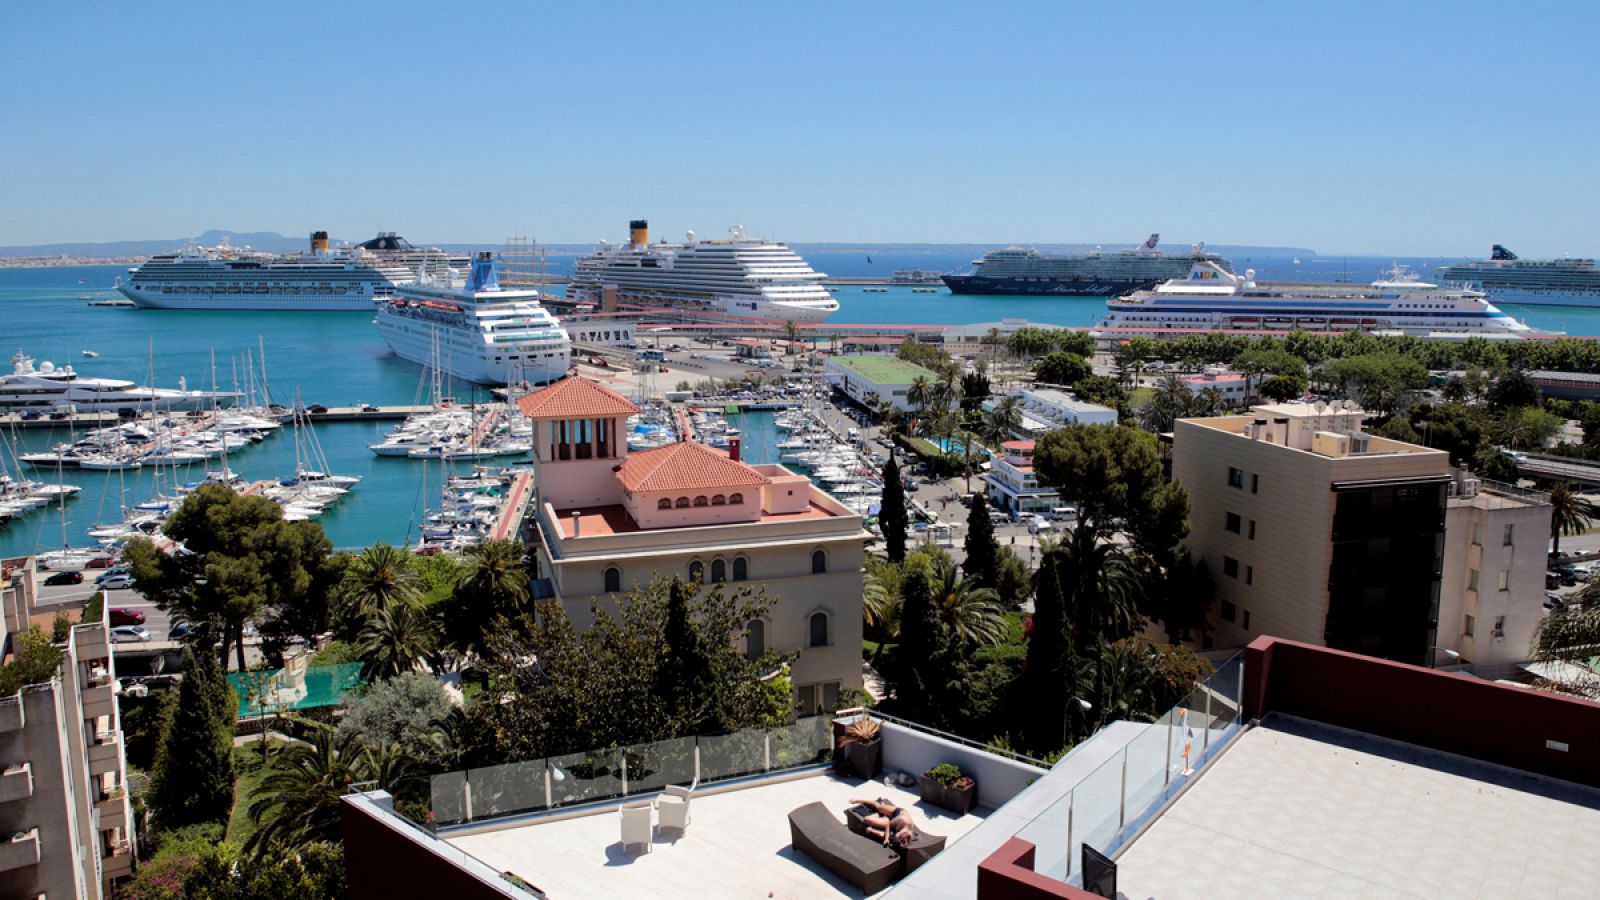 Cruceros turísticos atracados en el Puerto de Palma